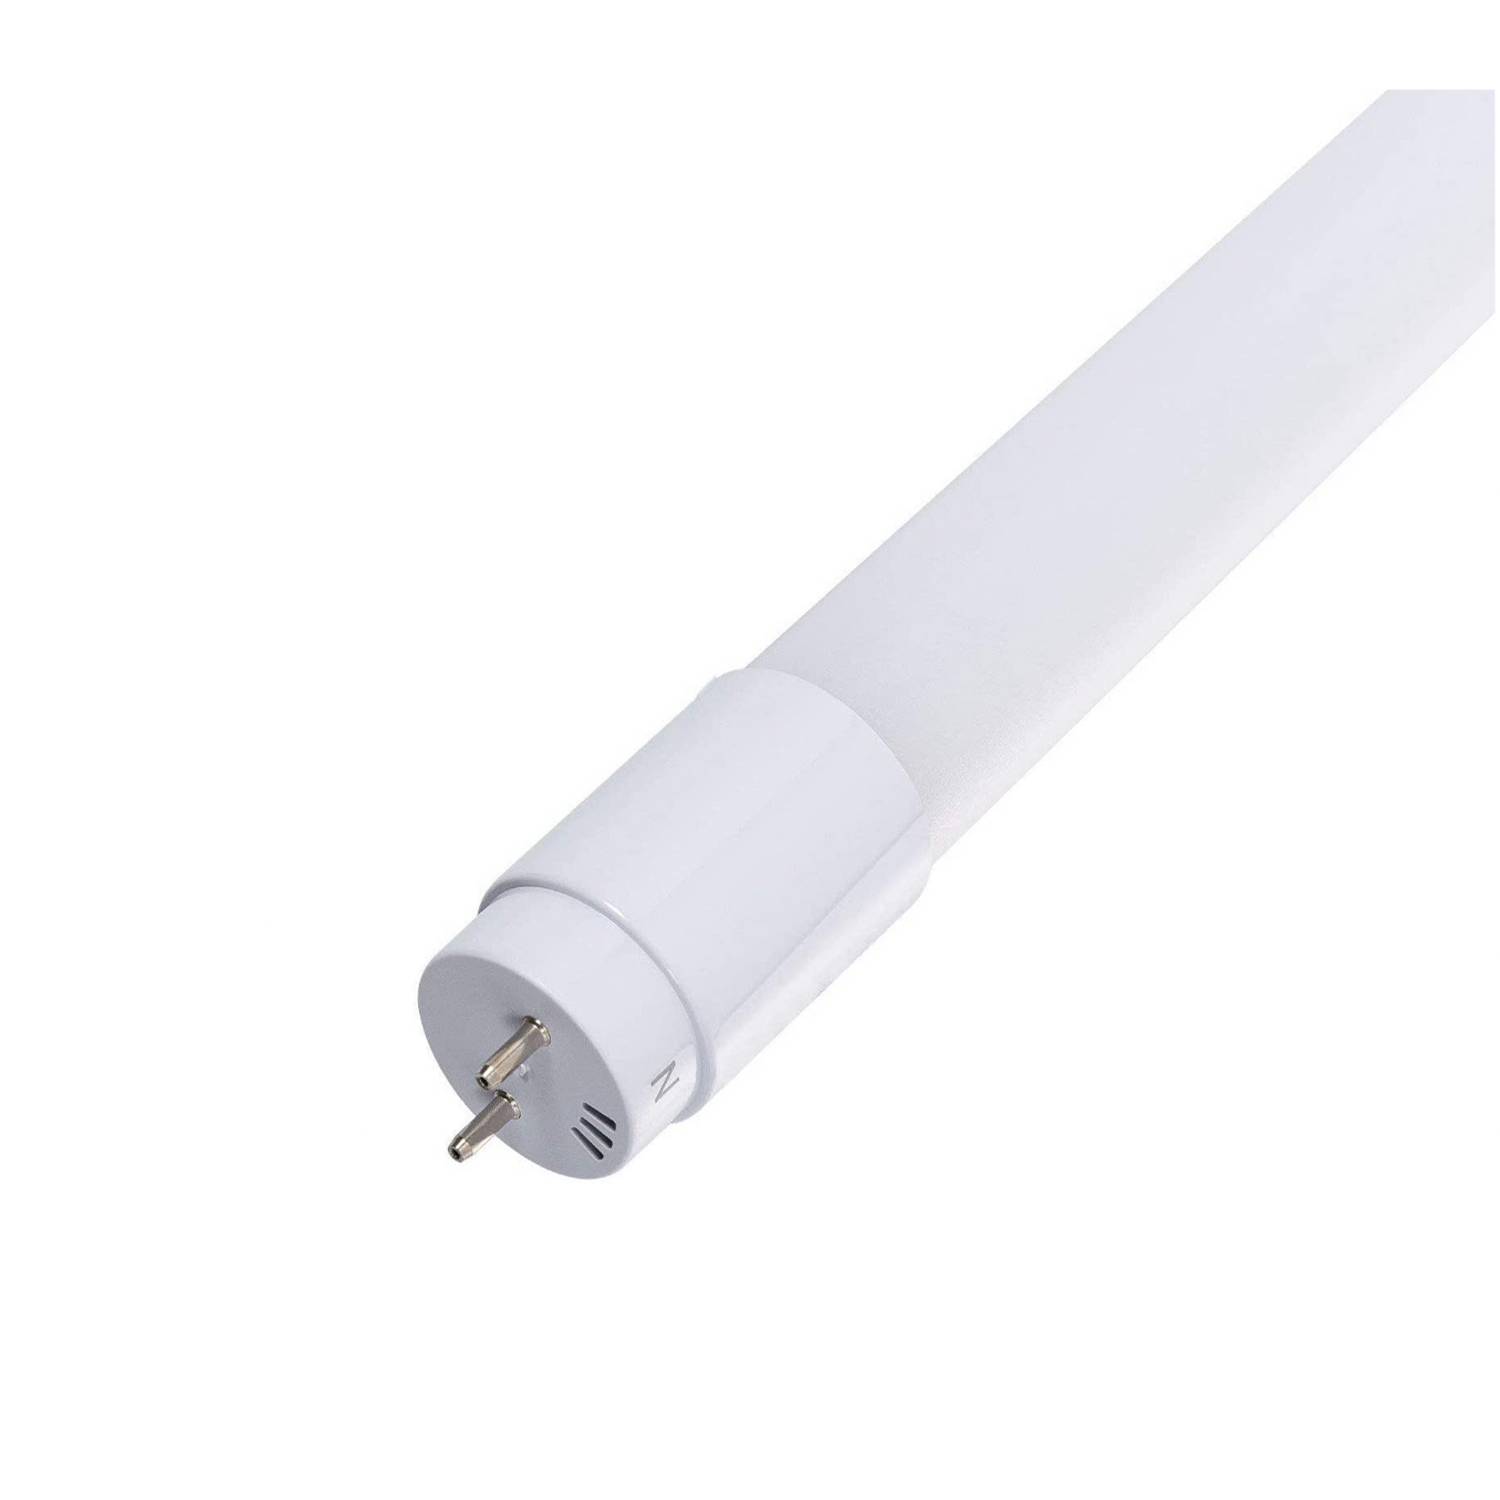 Groenten Leraar op school blad LED TL buis 60cm - 10W vervangt 18W - 4000K (840) helder wit licht -  Ledlichtdiscounter.nl